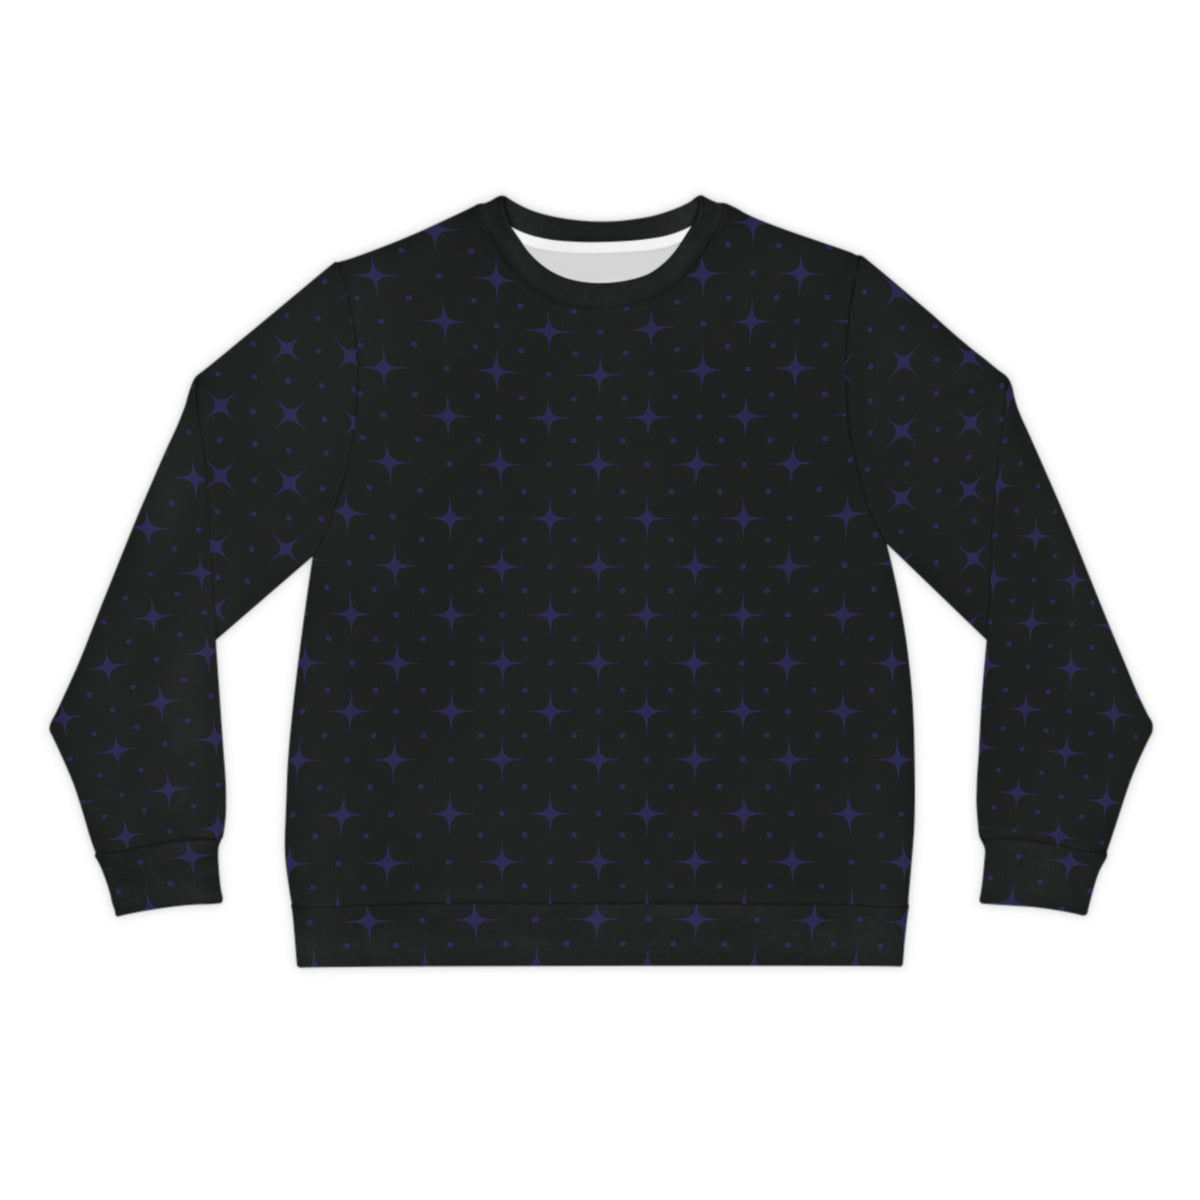 Star Lit Lightweight Sweatshirt - Blue/Black, Unisex